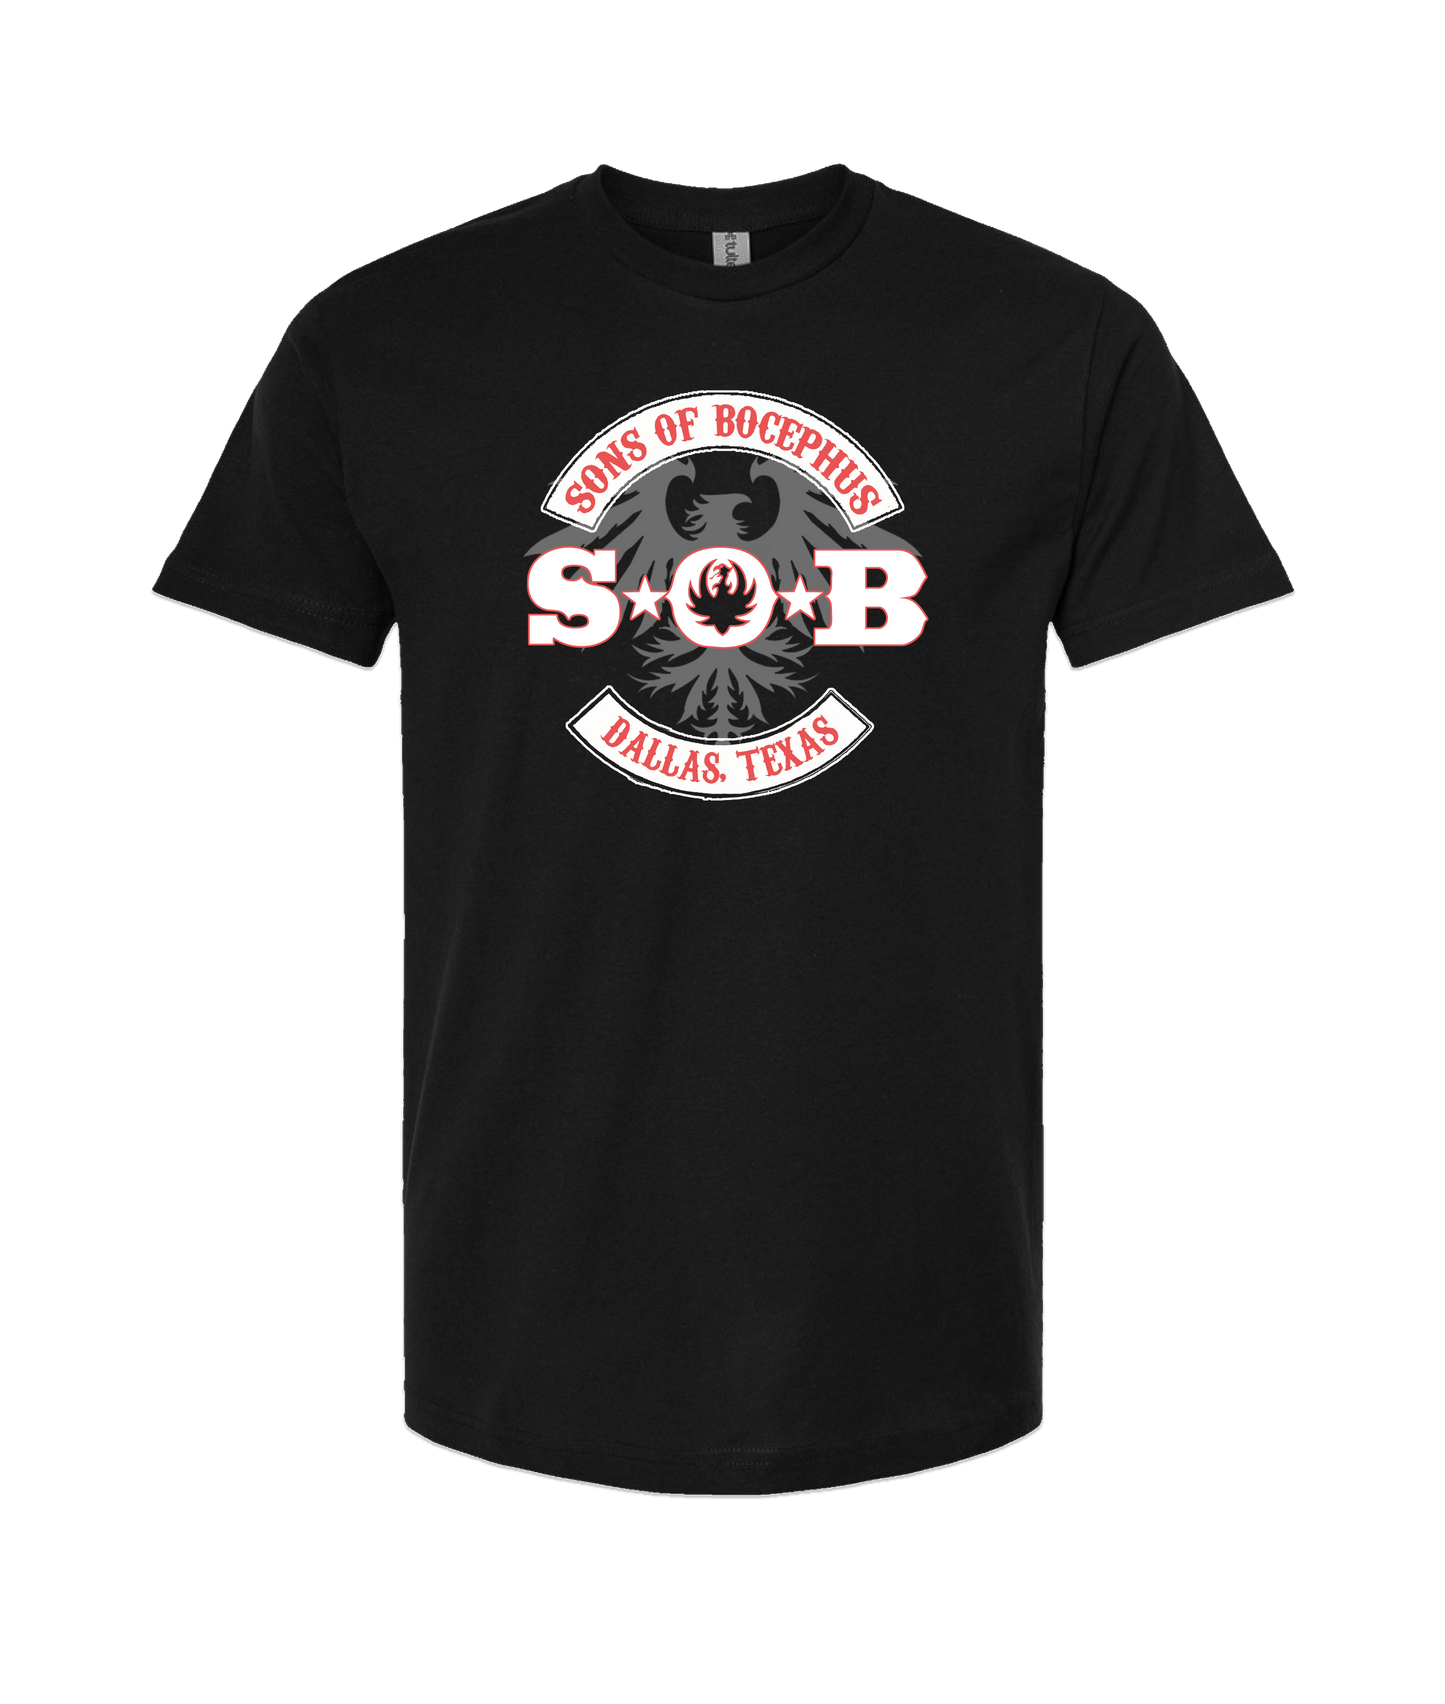 Sons of Bocephus - Dallas, TX - Black T-Shirt